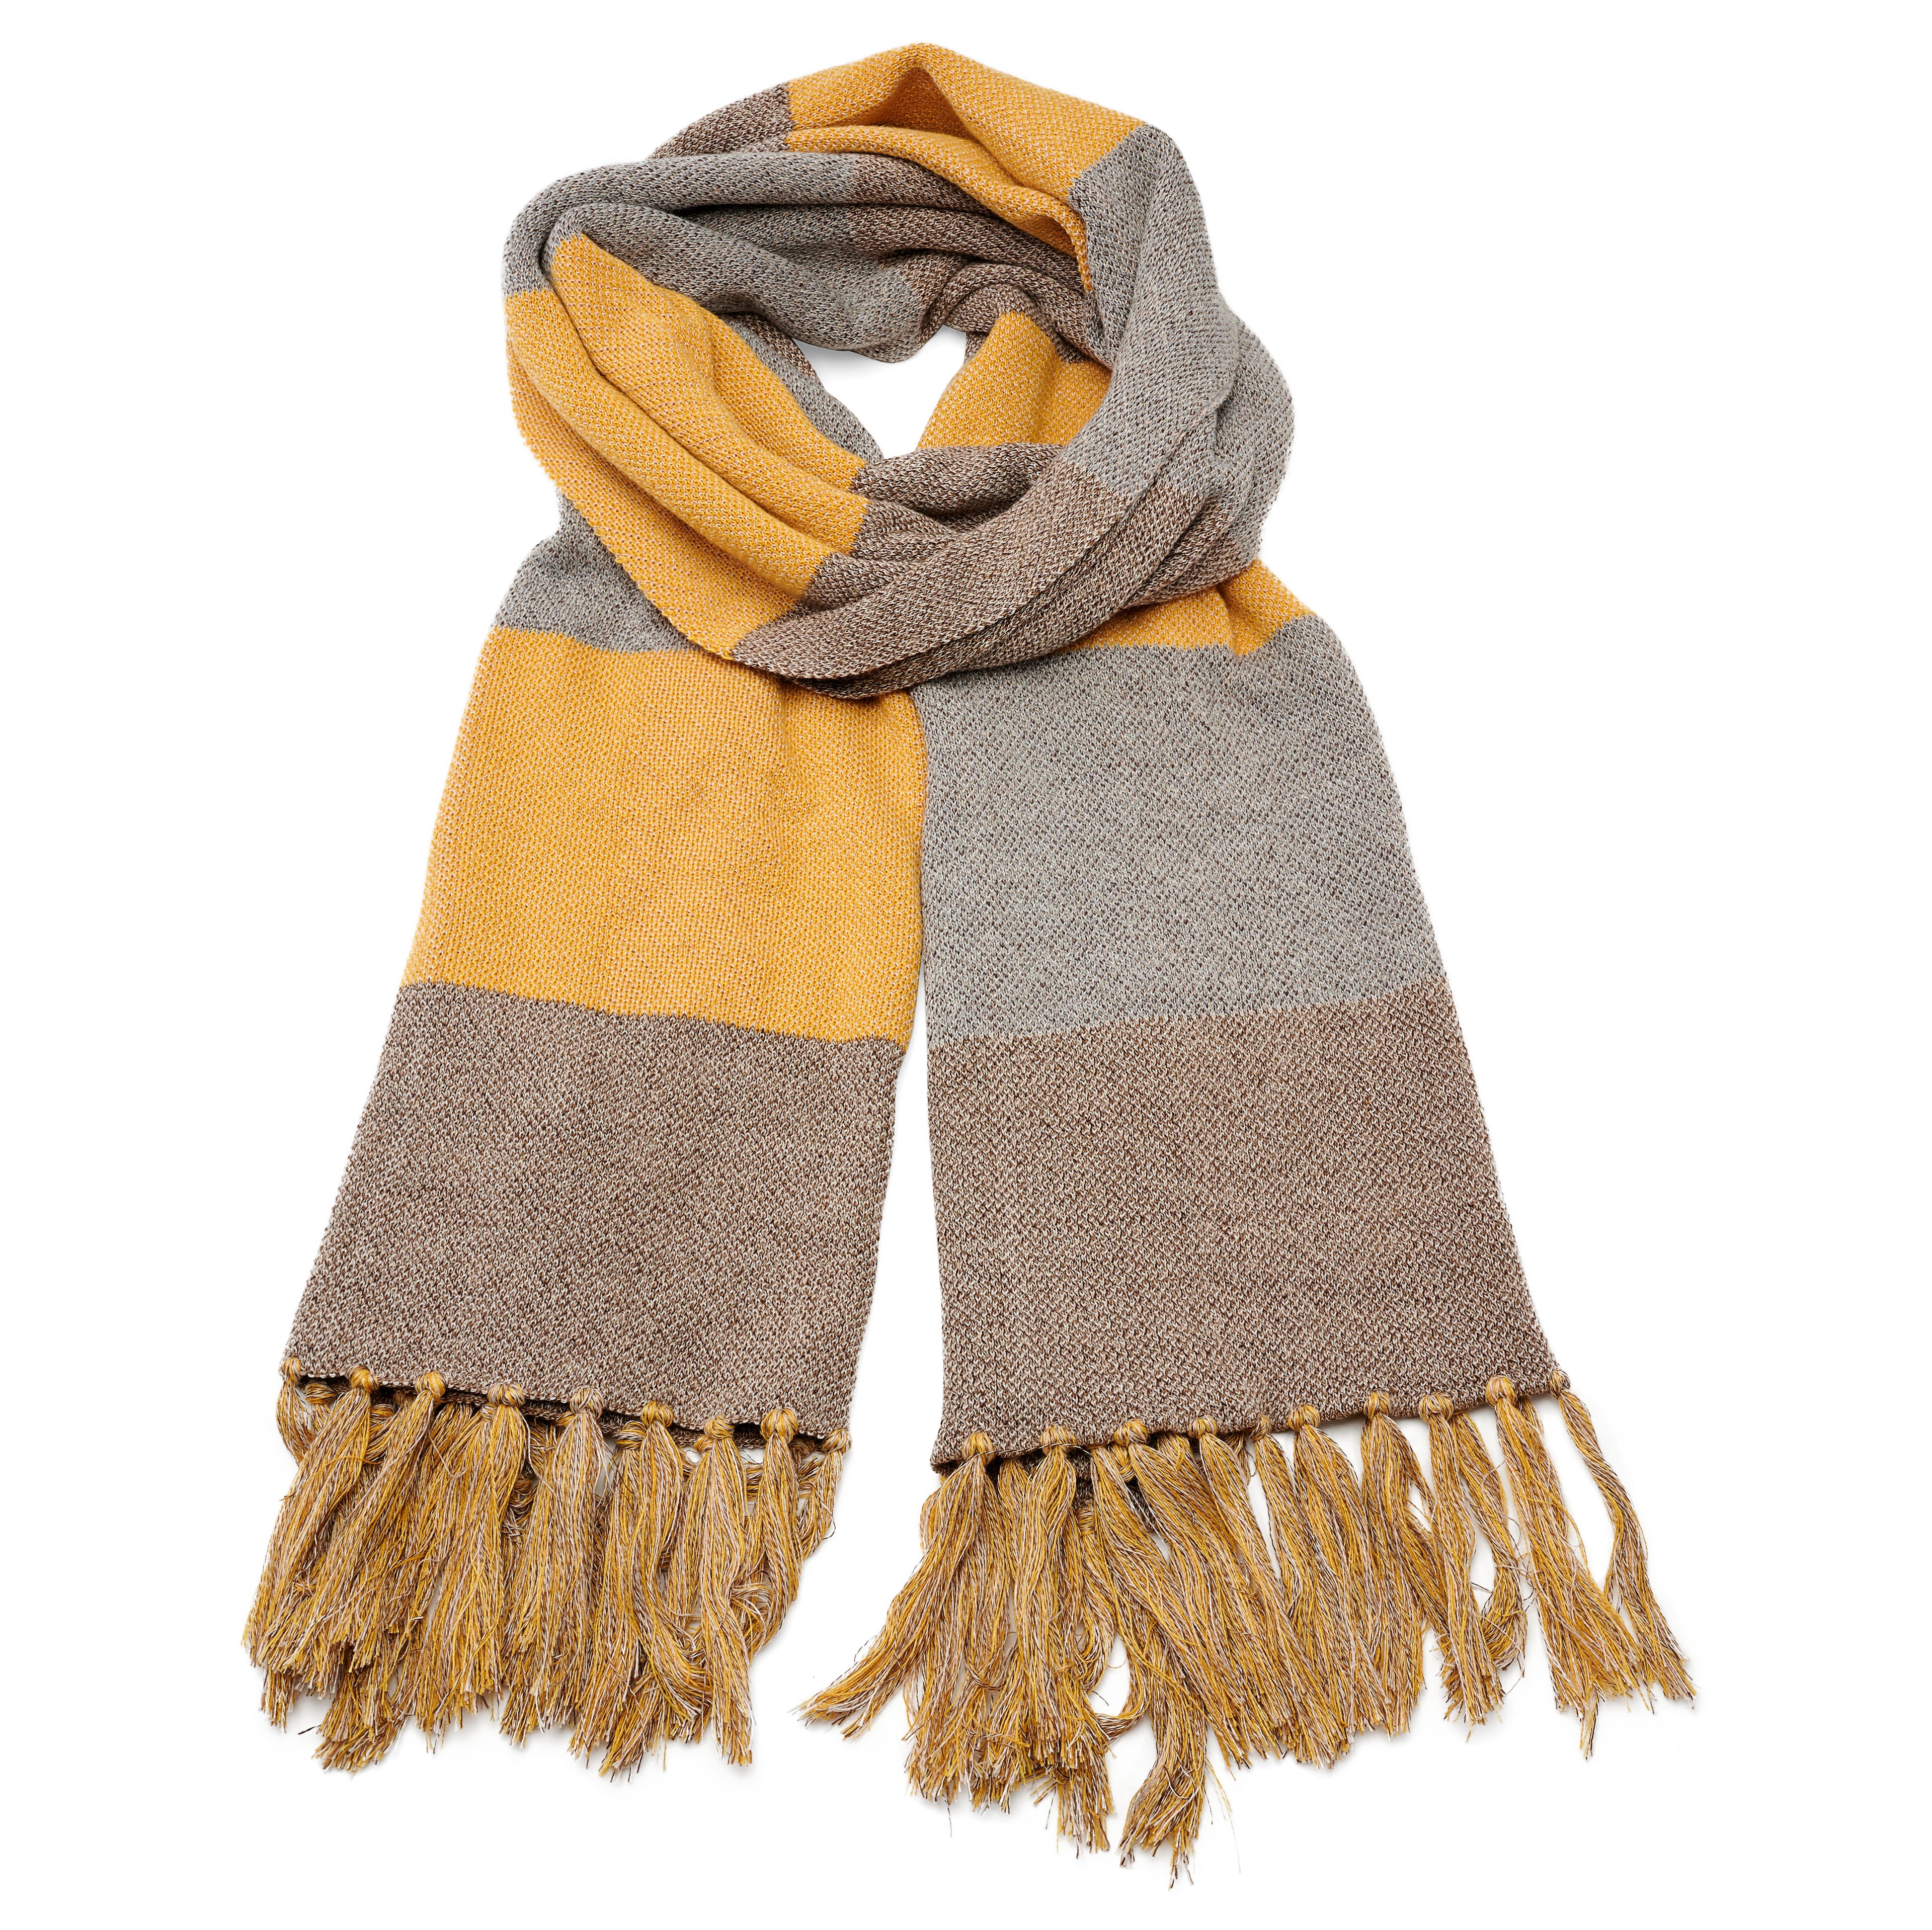 Hiems | Braun und gelb karierter Schal aus recycelter Baumwolle